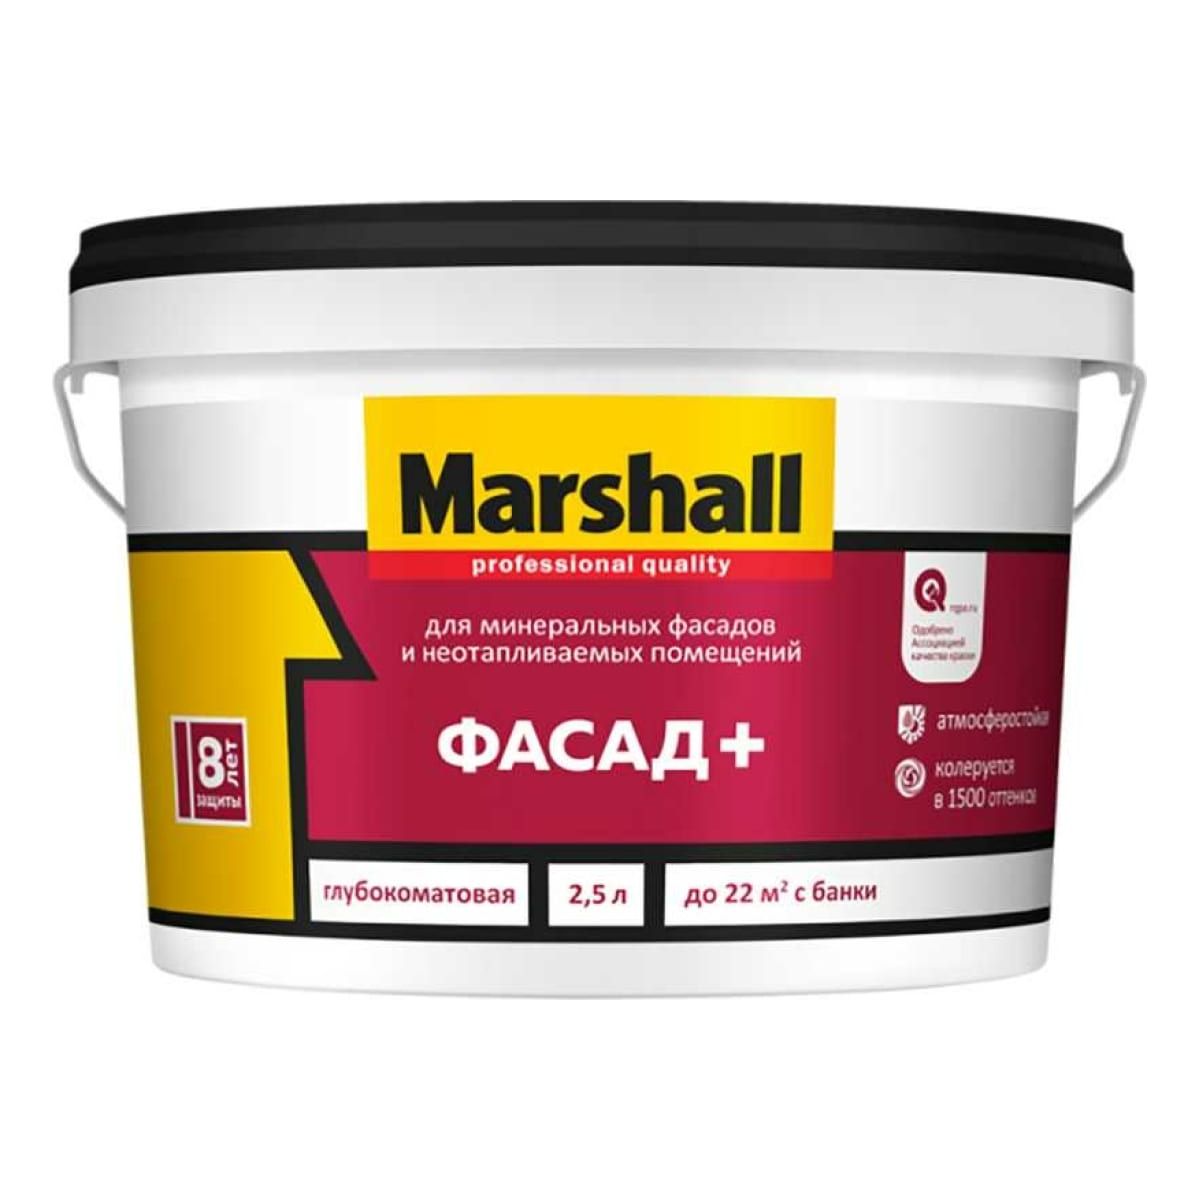 краска marshall фасад глубокоматовая база bc 9 л Краска Marshall Фасад+, глубокоматовая, база BW, 2,5 л